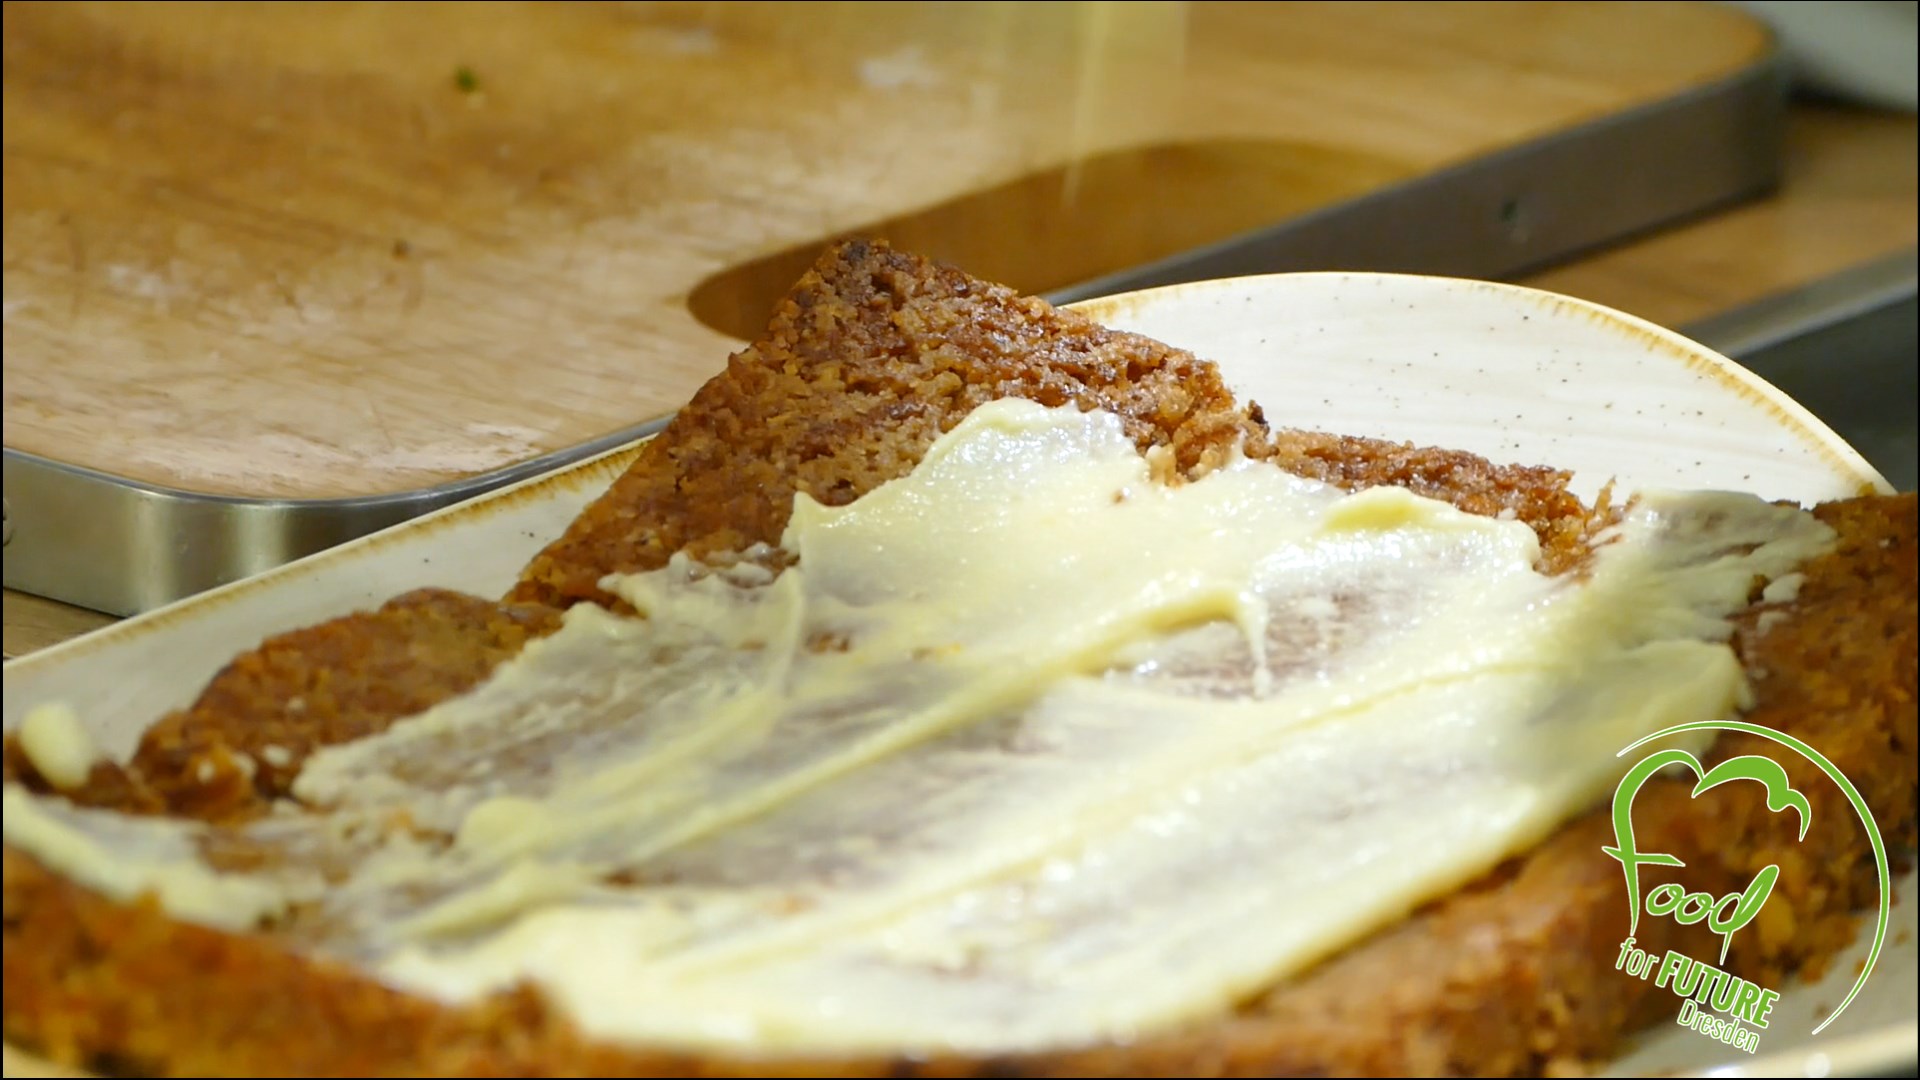 Toastscheibe, die mit Margarine bestrichen ist, liegt auf einem Holzbrett. Rechts unten das Logo von Food for Future.